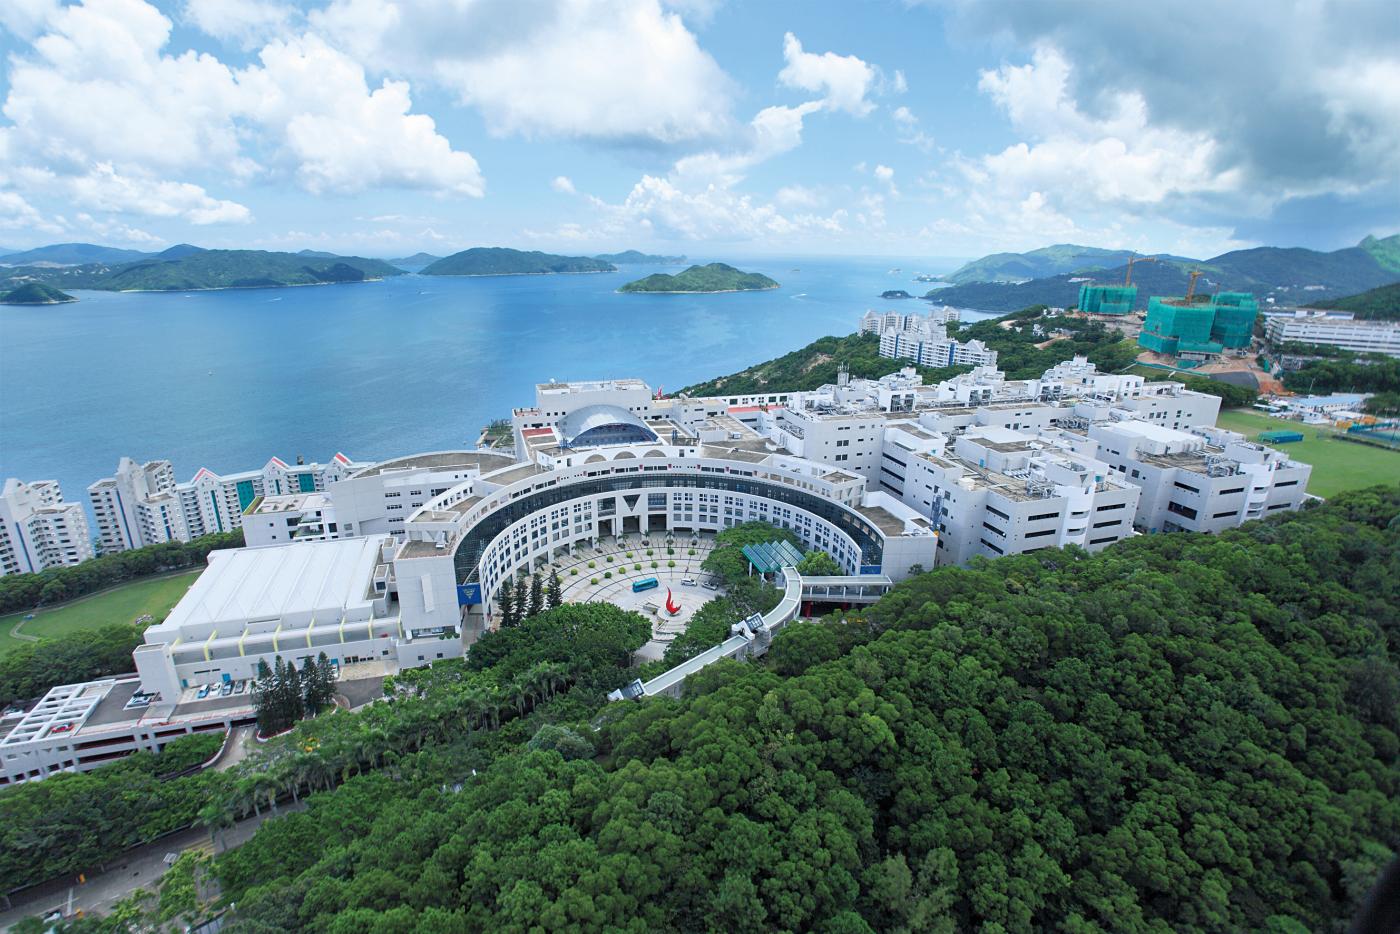 hongkong university wikimedia